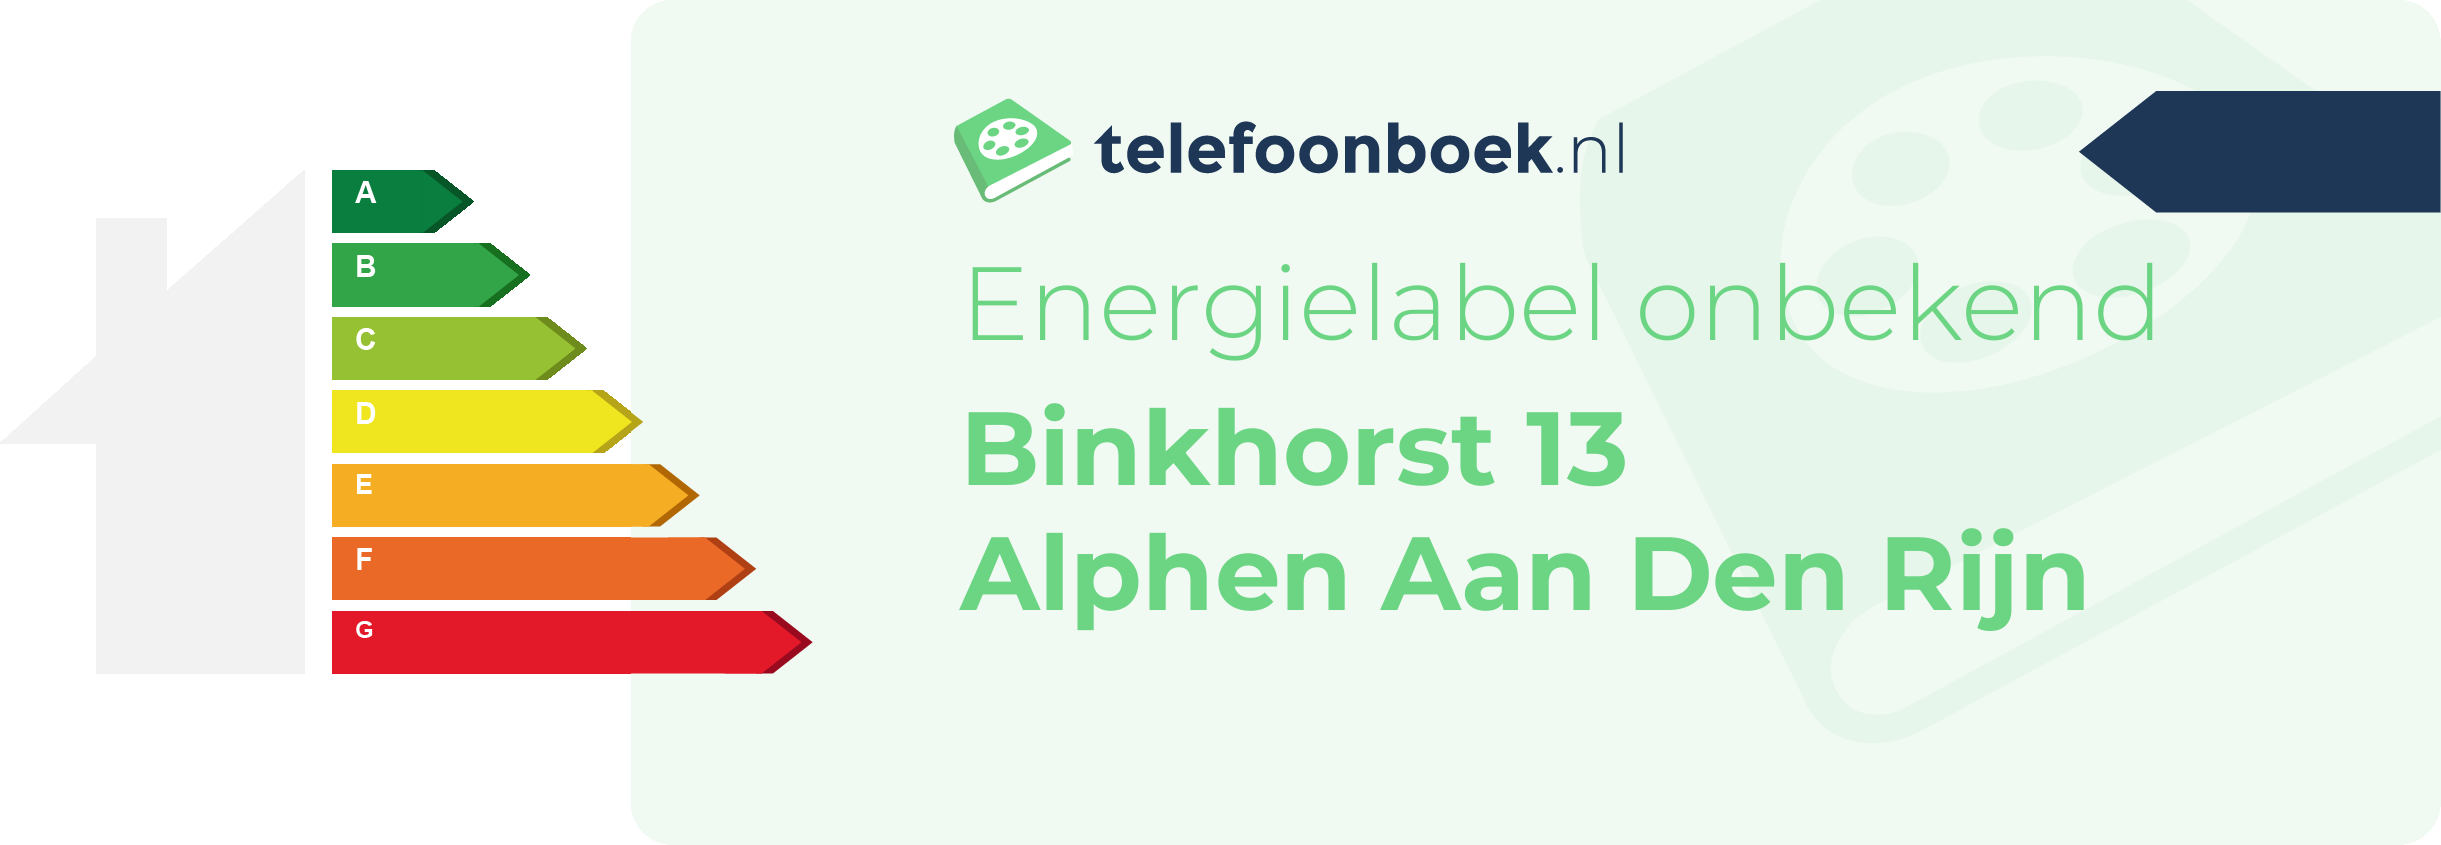 Energielabel Binkhorst 13 Alphen Aan Den Rijn